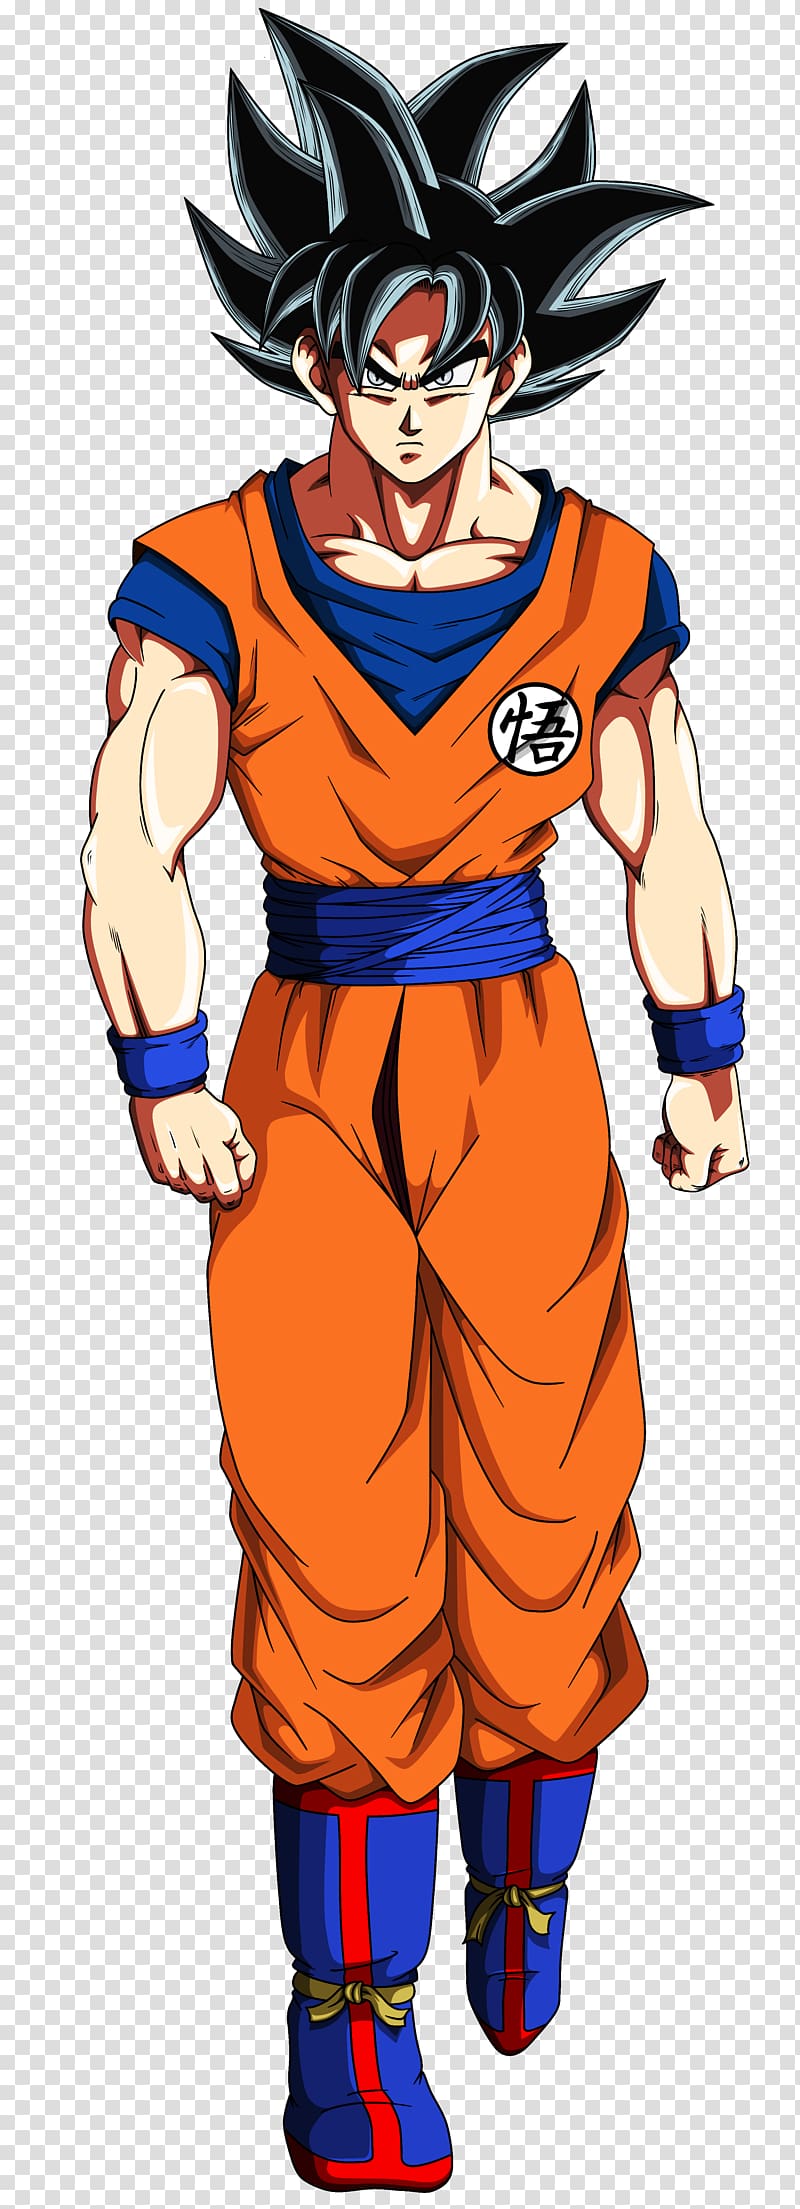 Goku Vegeta Super Saiyan , goku transparent background PNG clipart